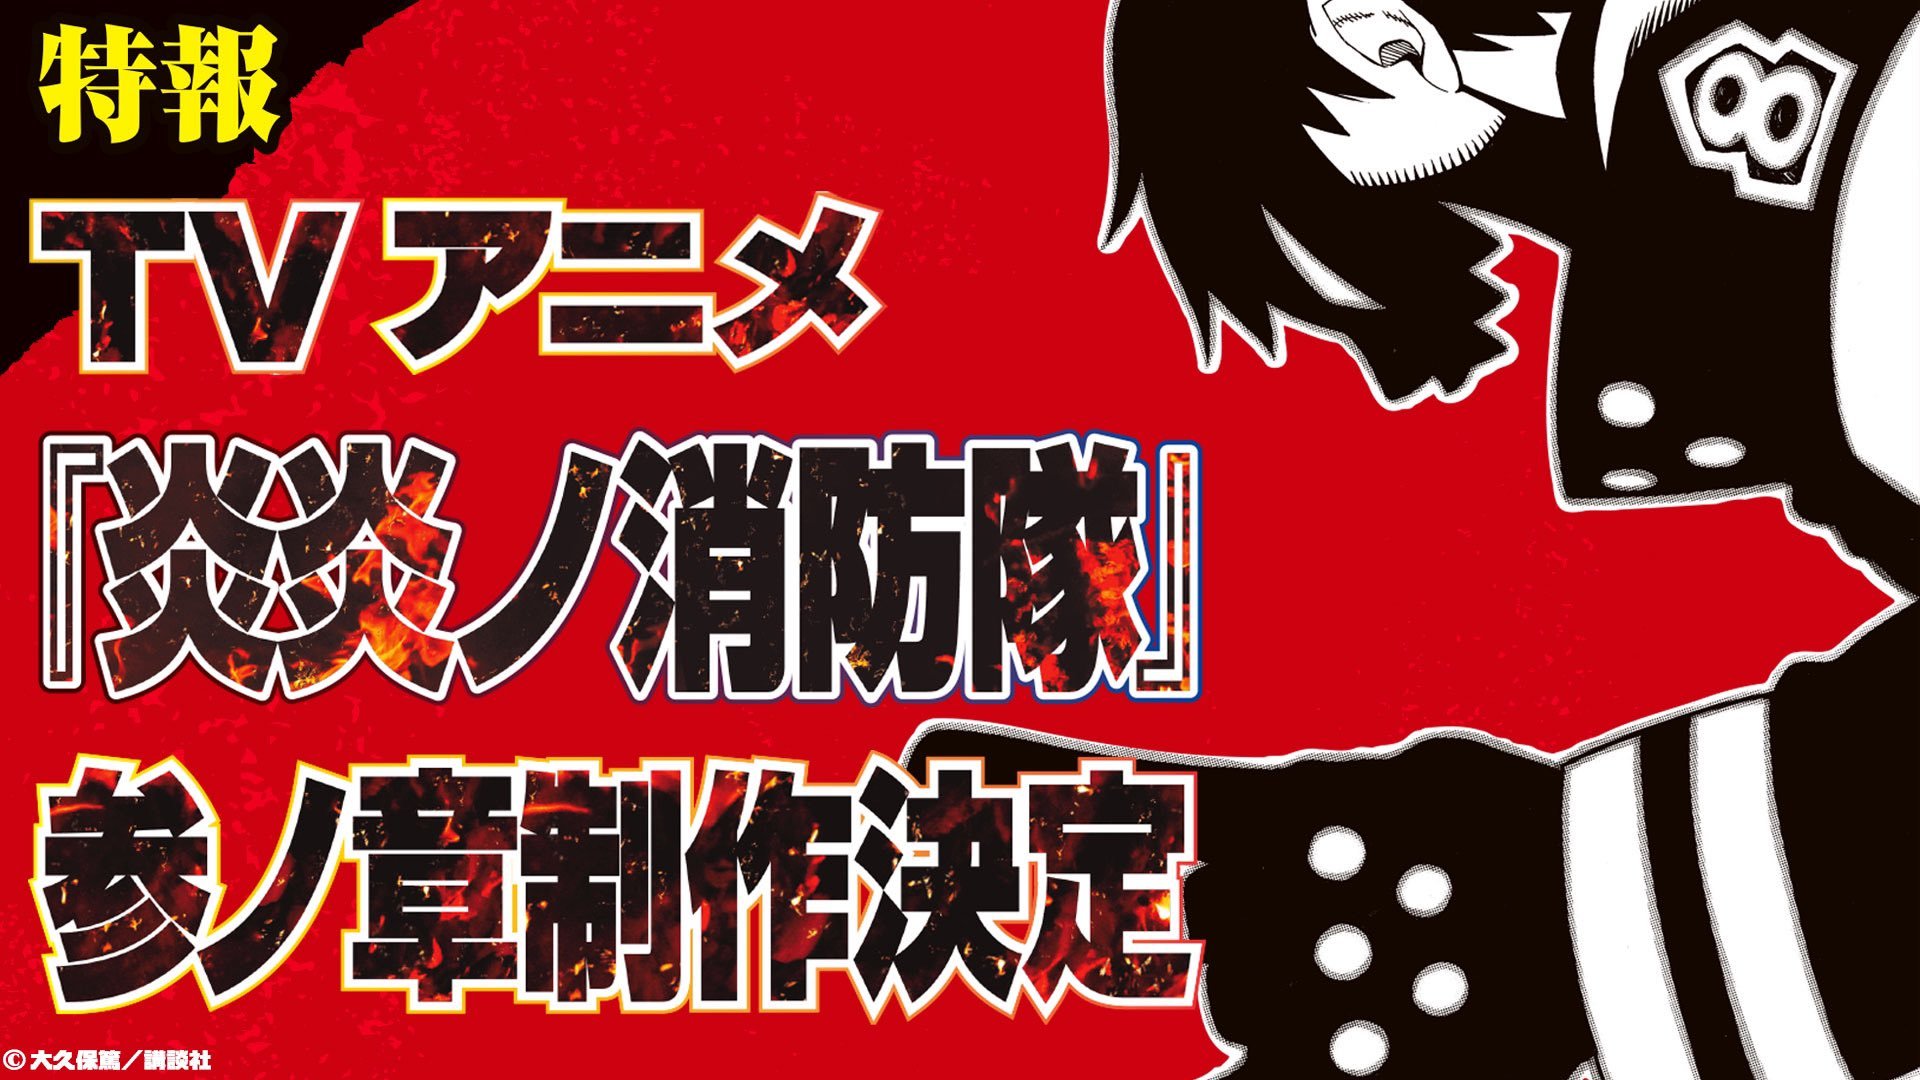 ShortieSenpai (6.3 spoilers) on X: Just started Fire Force ✌️ #fireforce # anime #fanart #art #joker  / X